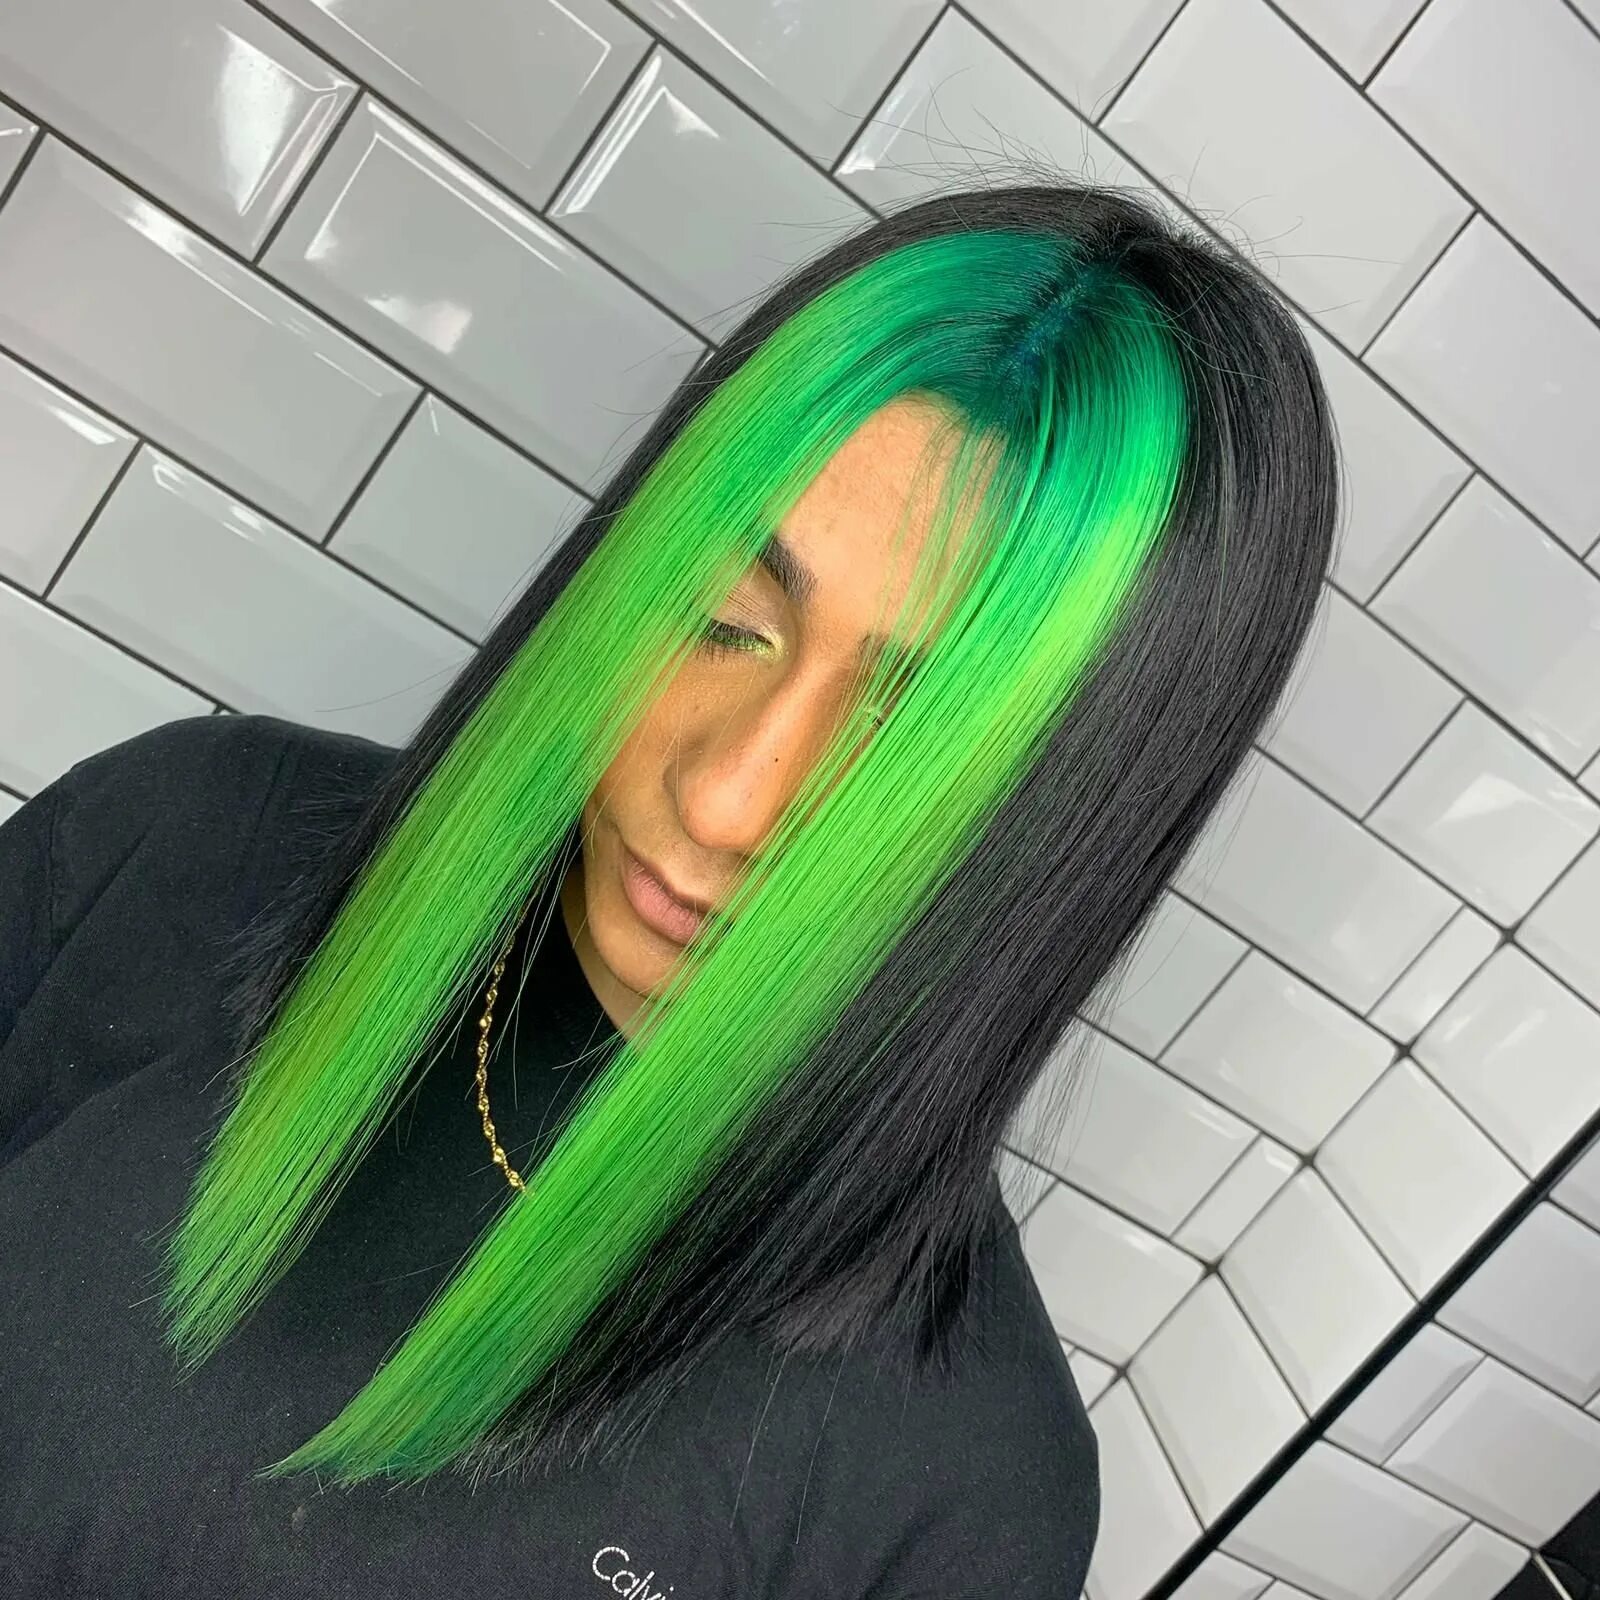 Чёрные волосы с зелёными прядями. Зелёные пряди на тёмных волосах. Девушка с зелеными волосами. Черный цвет волос с зелеными прядями.